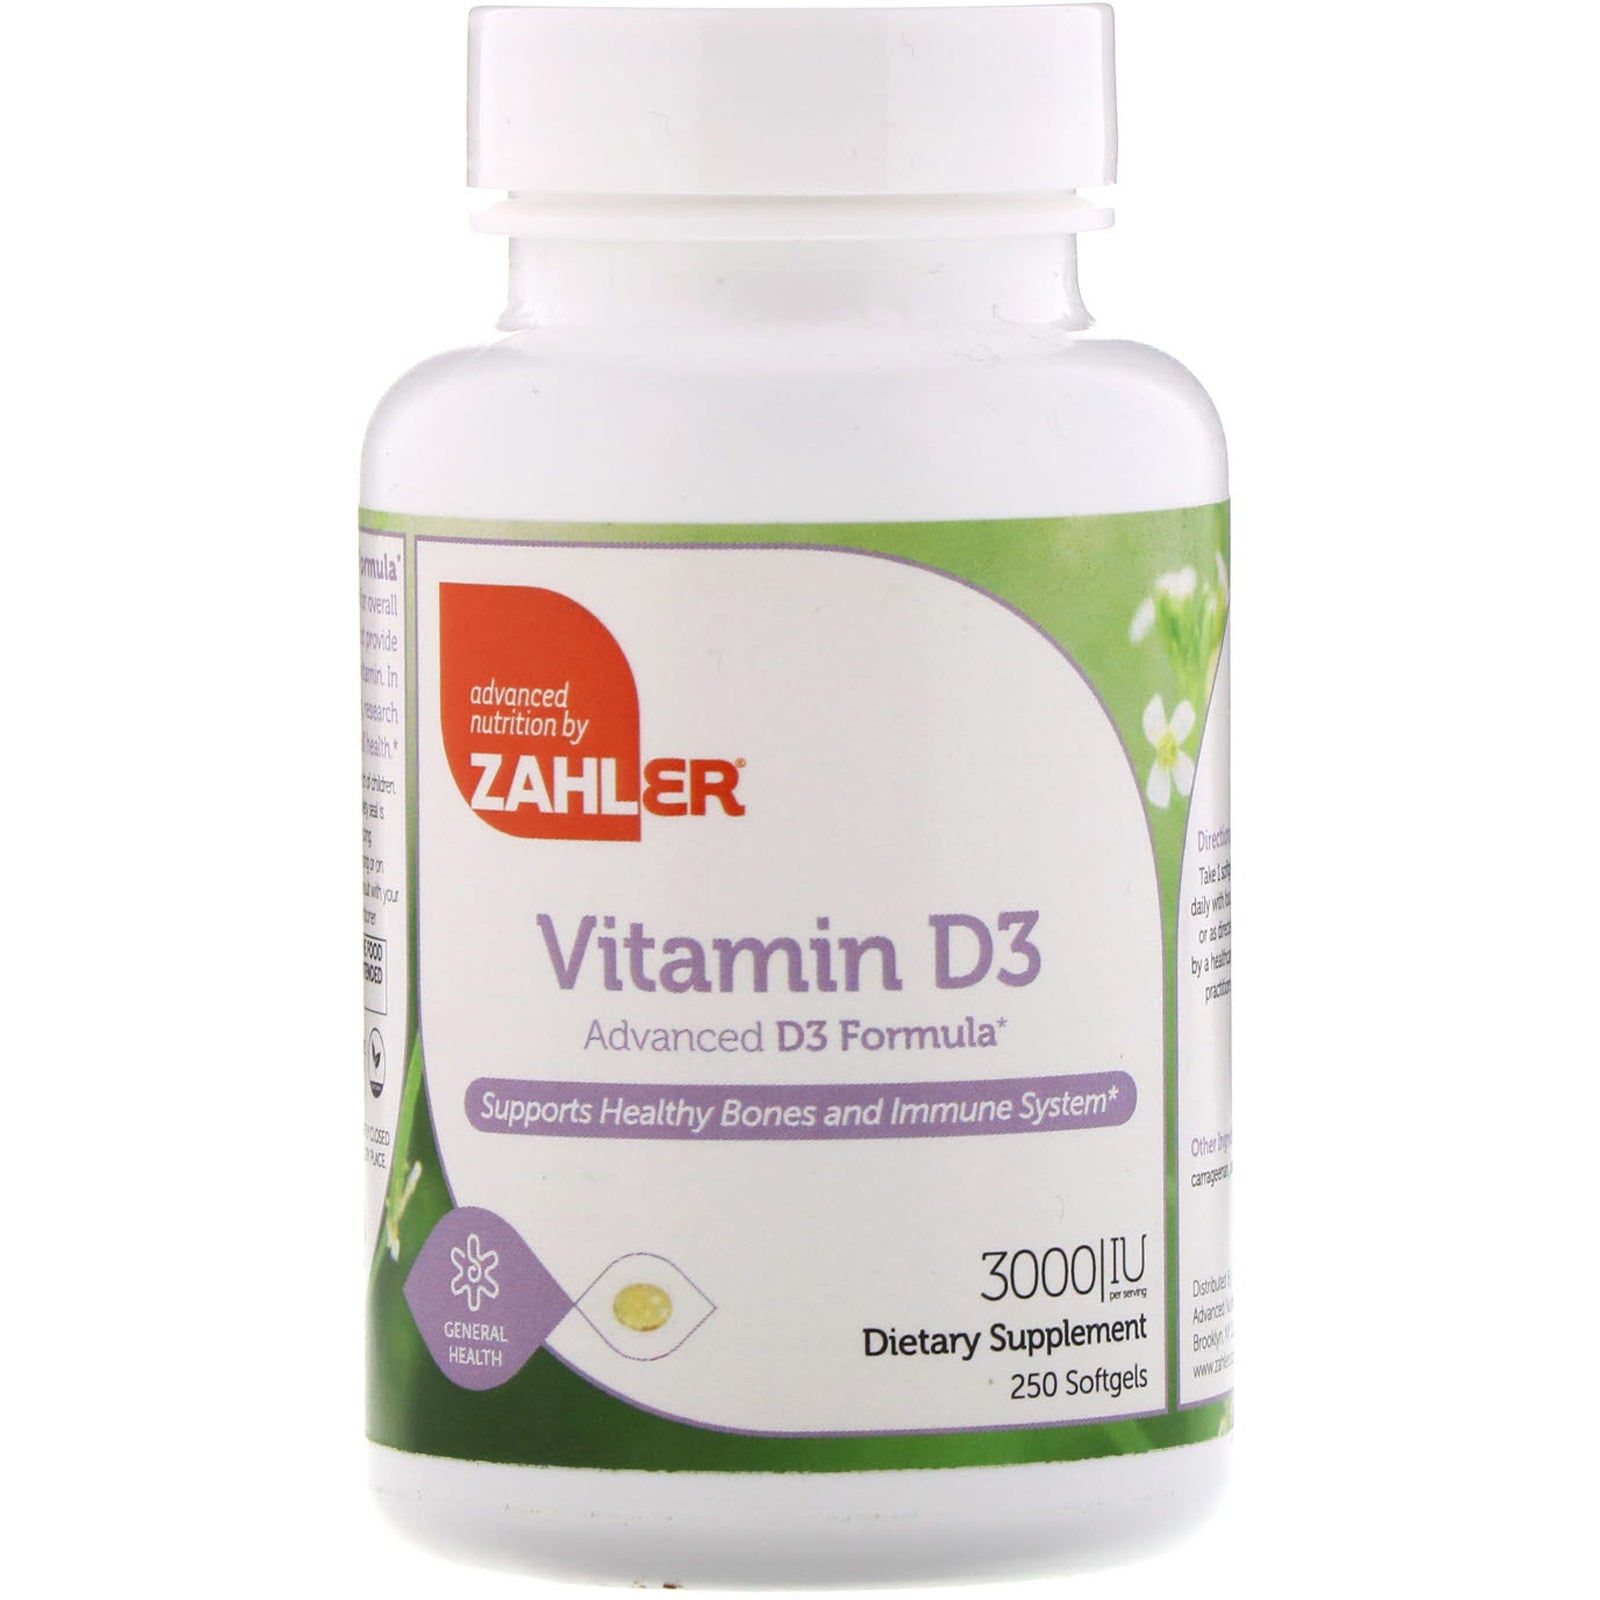 Zahler, Vitamin D3, Advanced D3 Formula, 3,000 IU, 250 Softgels